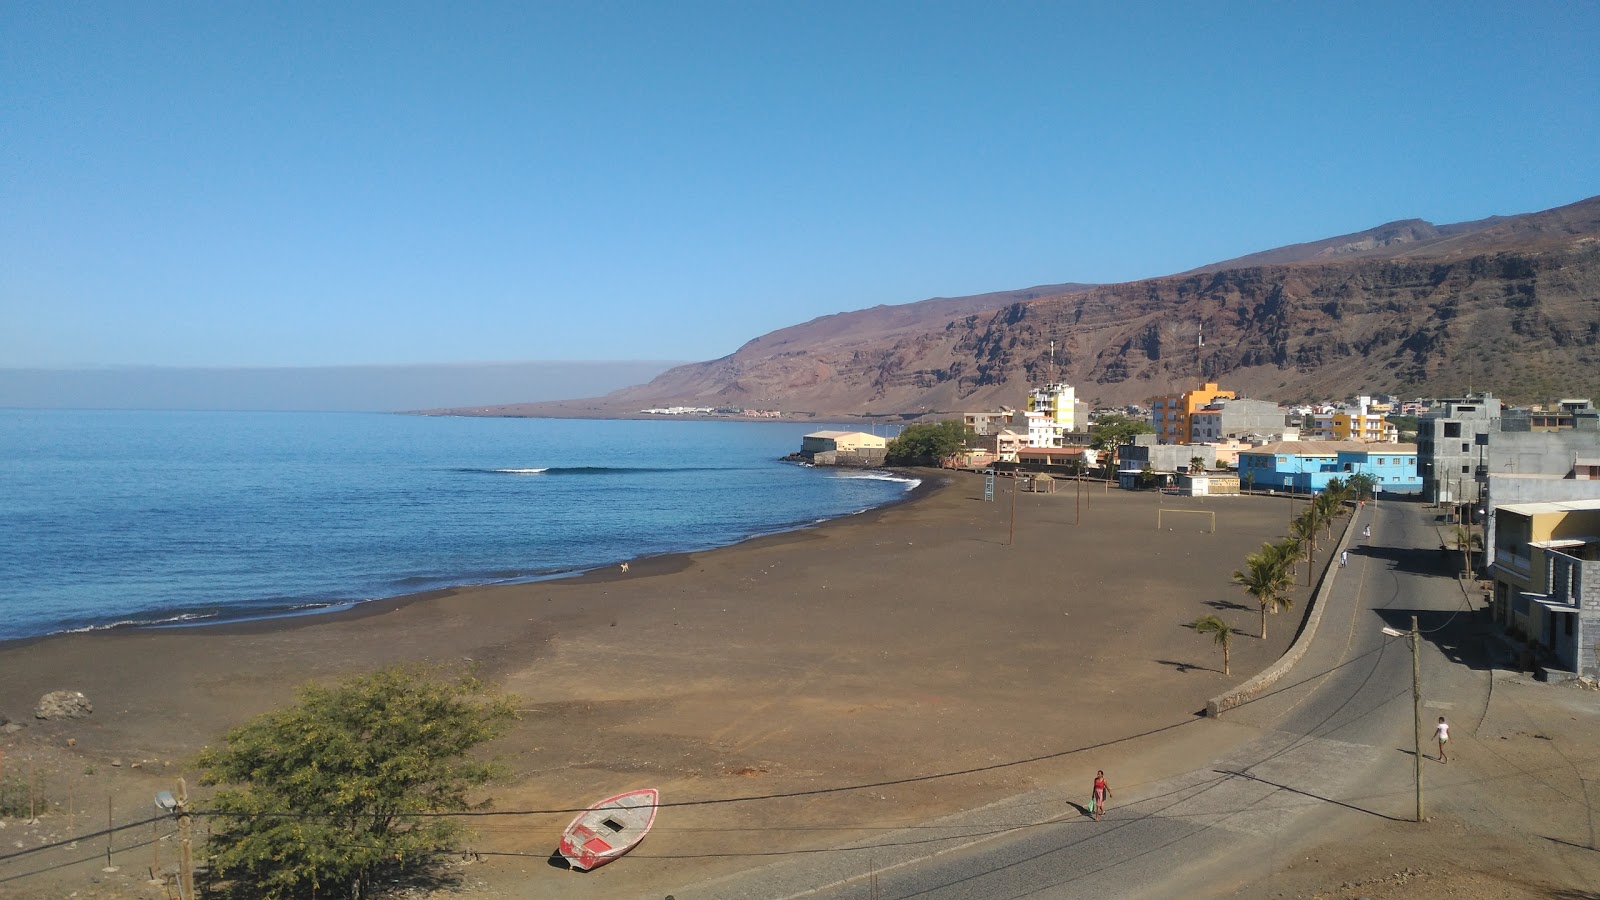 Praia Tedja'in fotoğrafı kahverengi kum yüzey ile